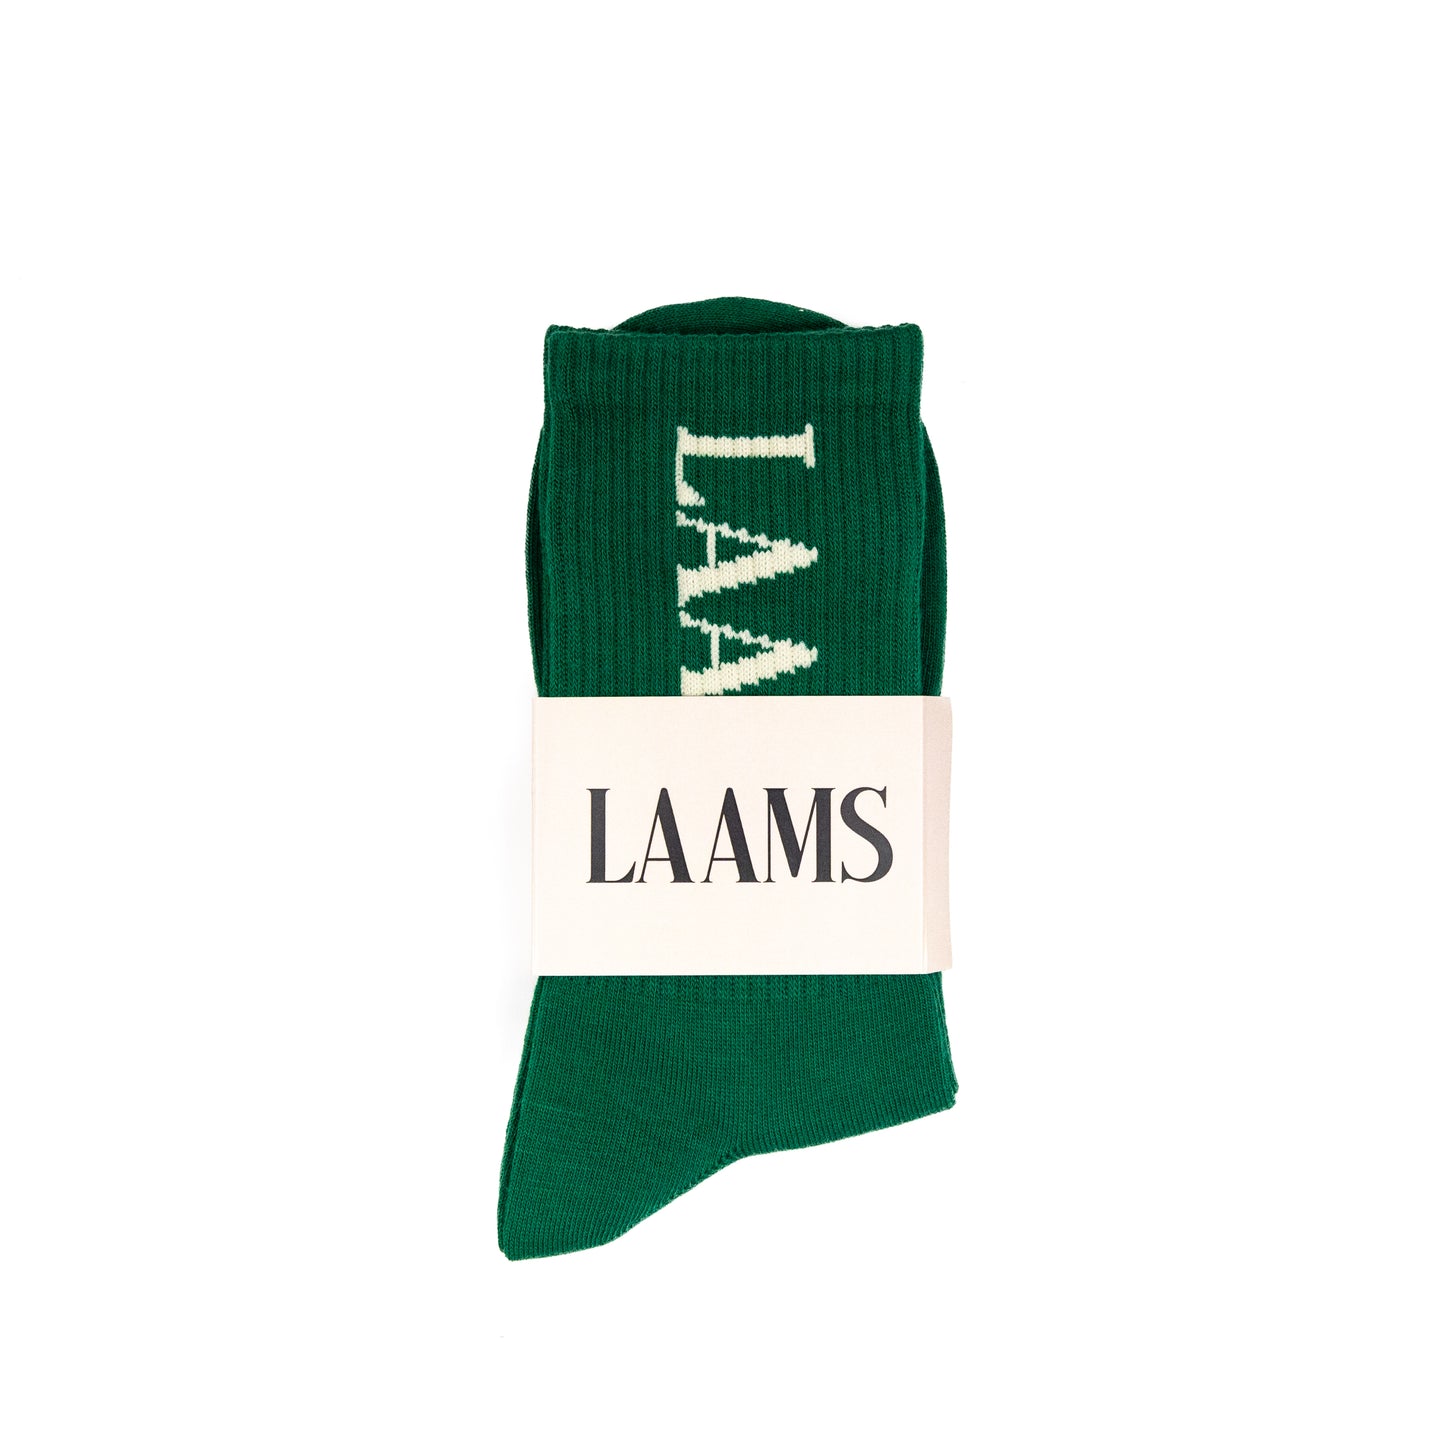 LAAMS Socks